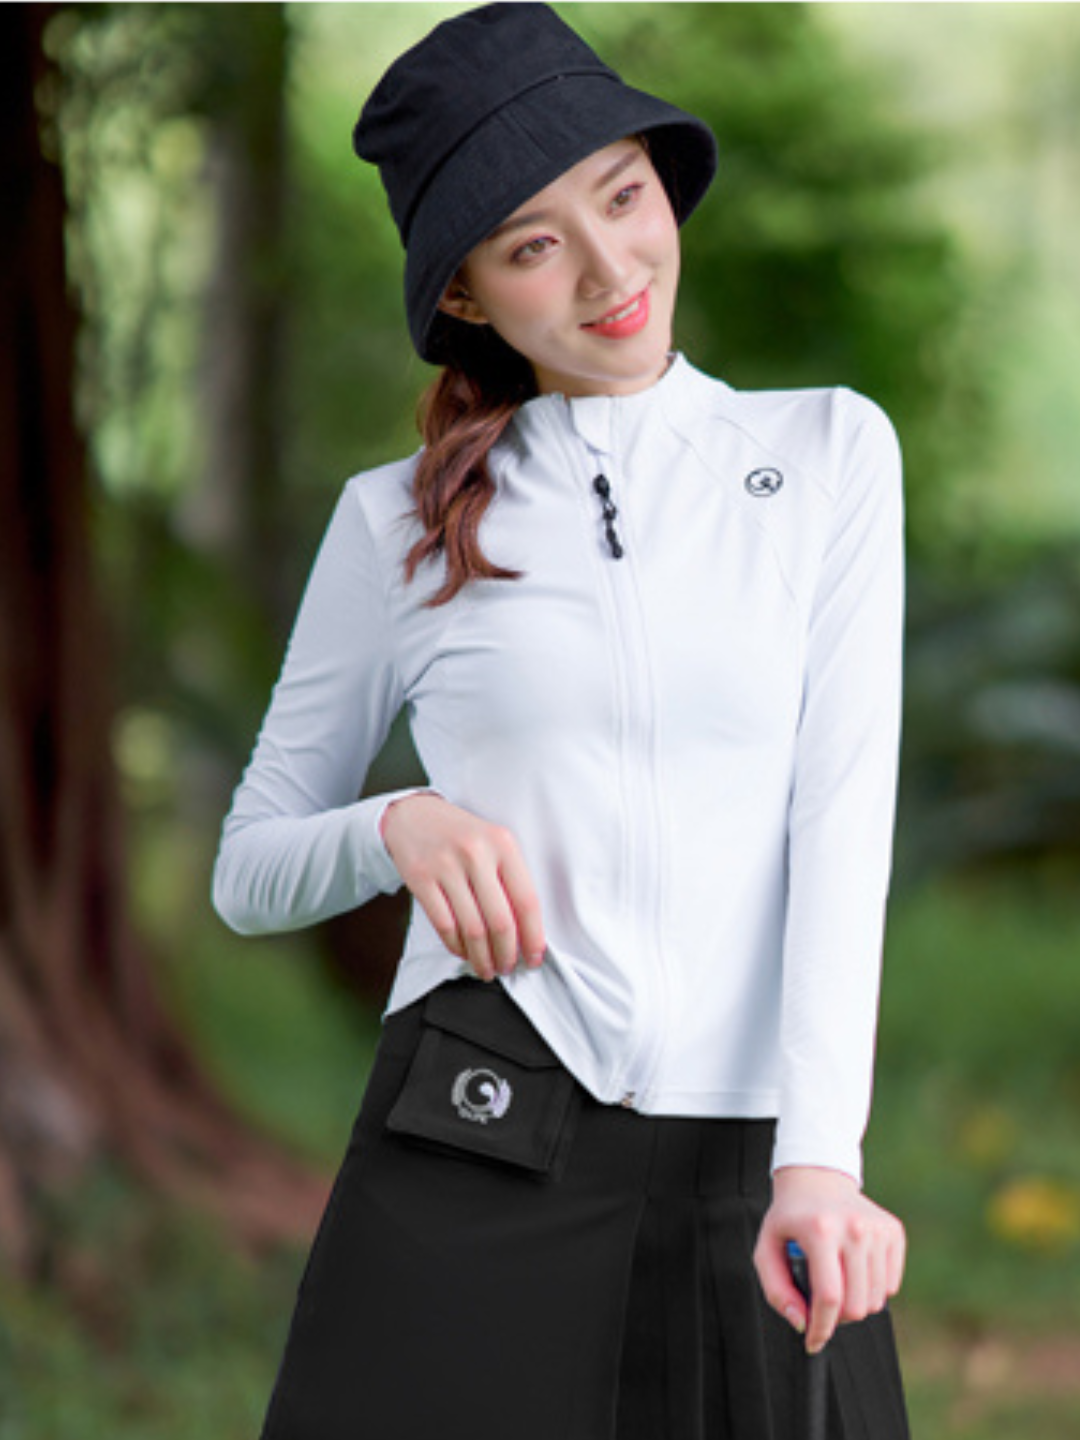 高尔夫球服，白色长袖外套和短裙套装 ch225